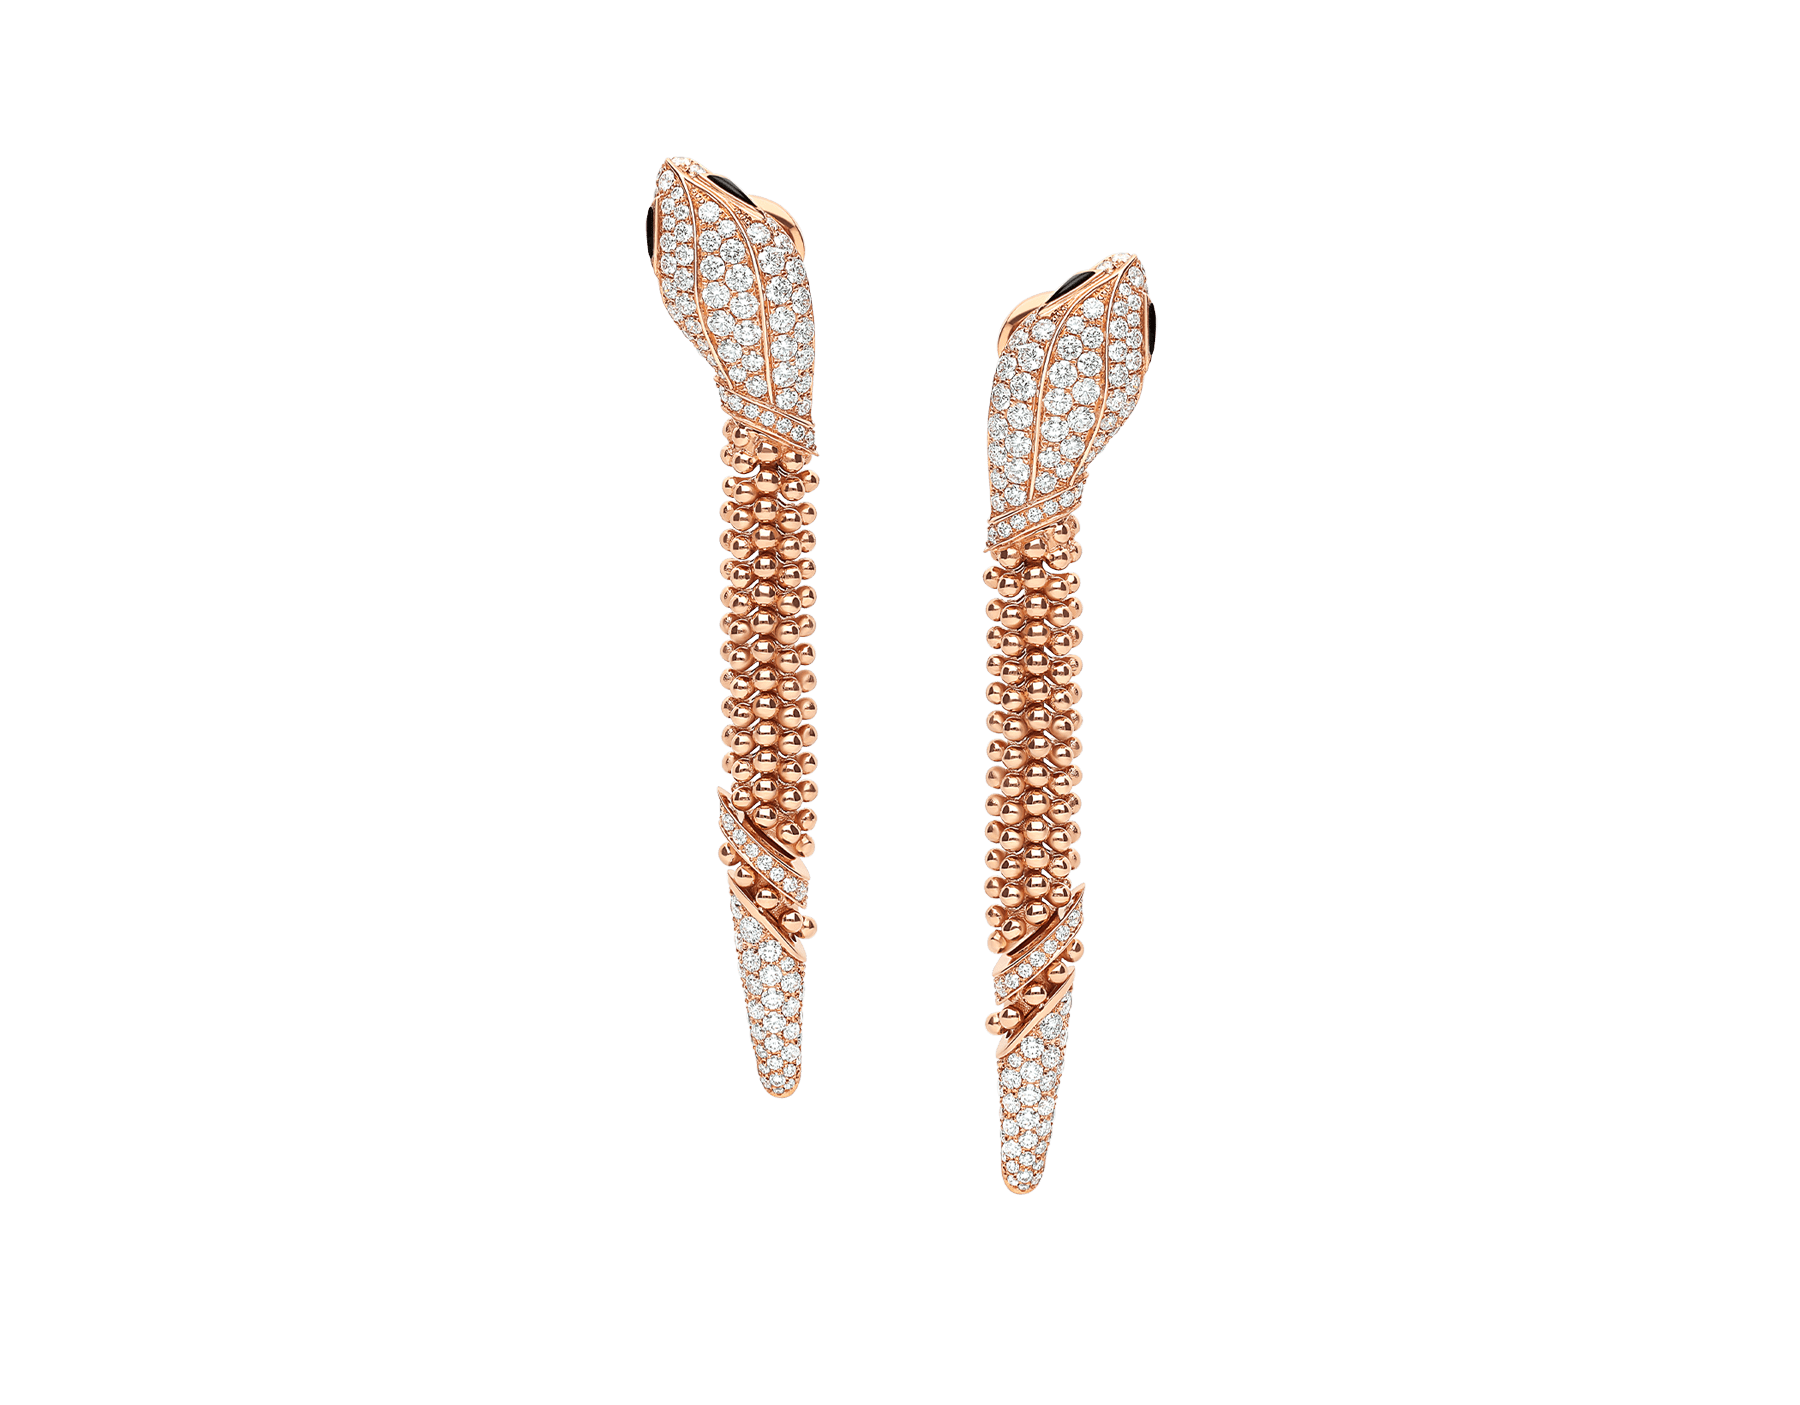 Serpenti Pallini Ohrringe aus 18 Karat Roségold mit Diamant-Pavé auf dem Schlangenkopf und -schwanz sowie Augen aus schwarzem Onyx 359387 image 1